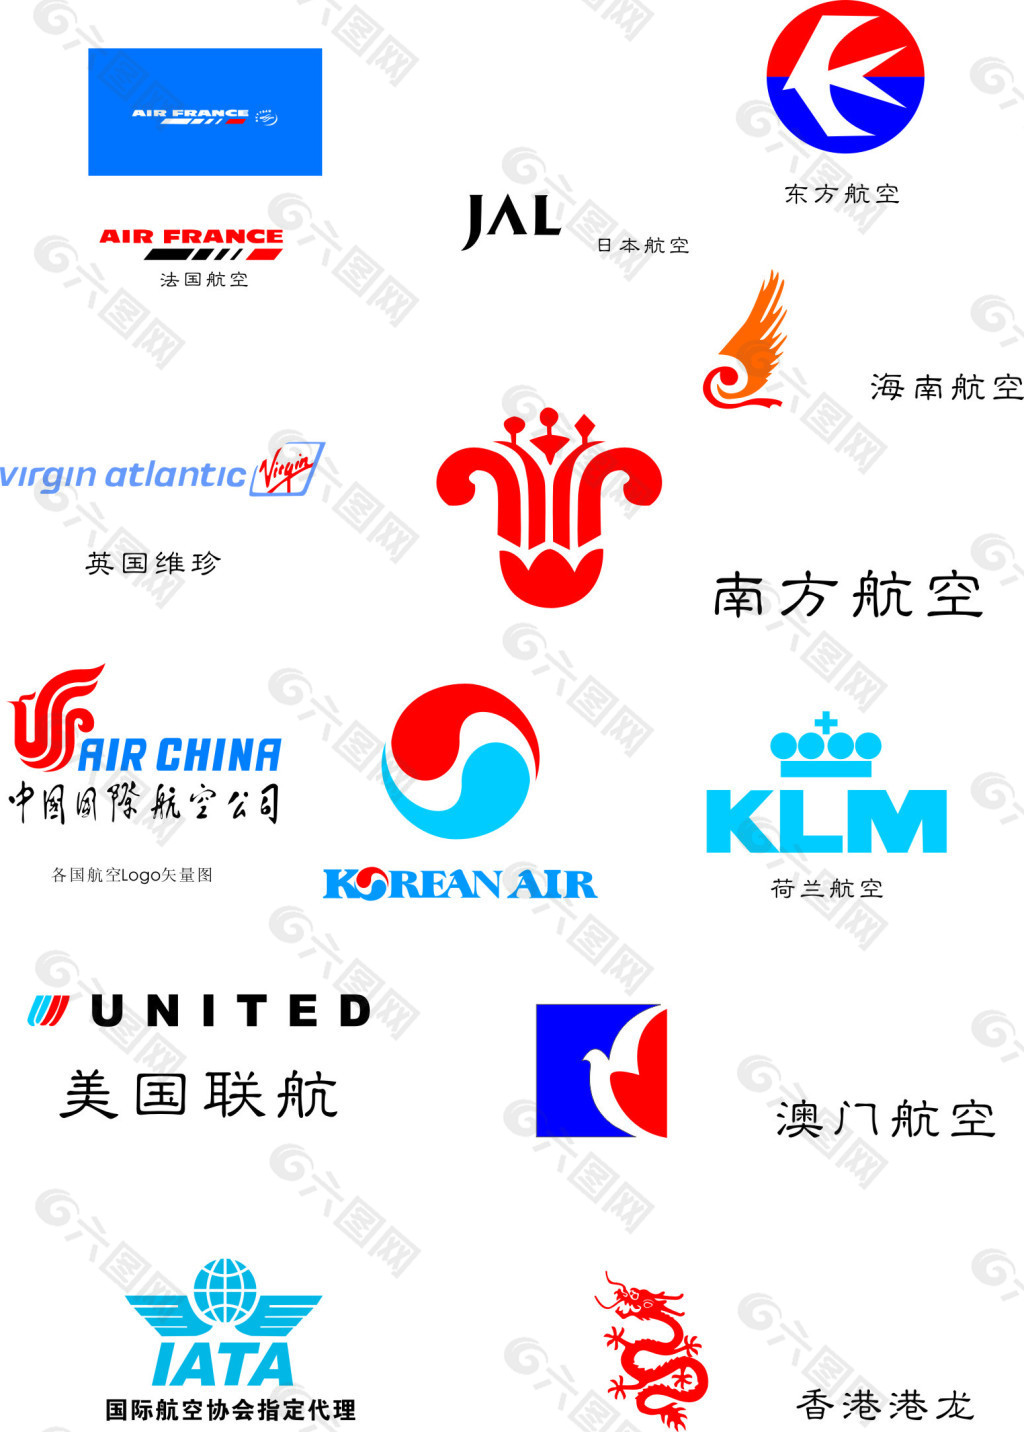 中国国航-商业空间&导示-三舱及产品设计-东道品牌创意设计